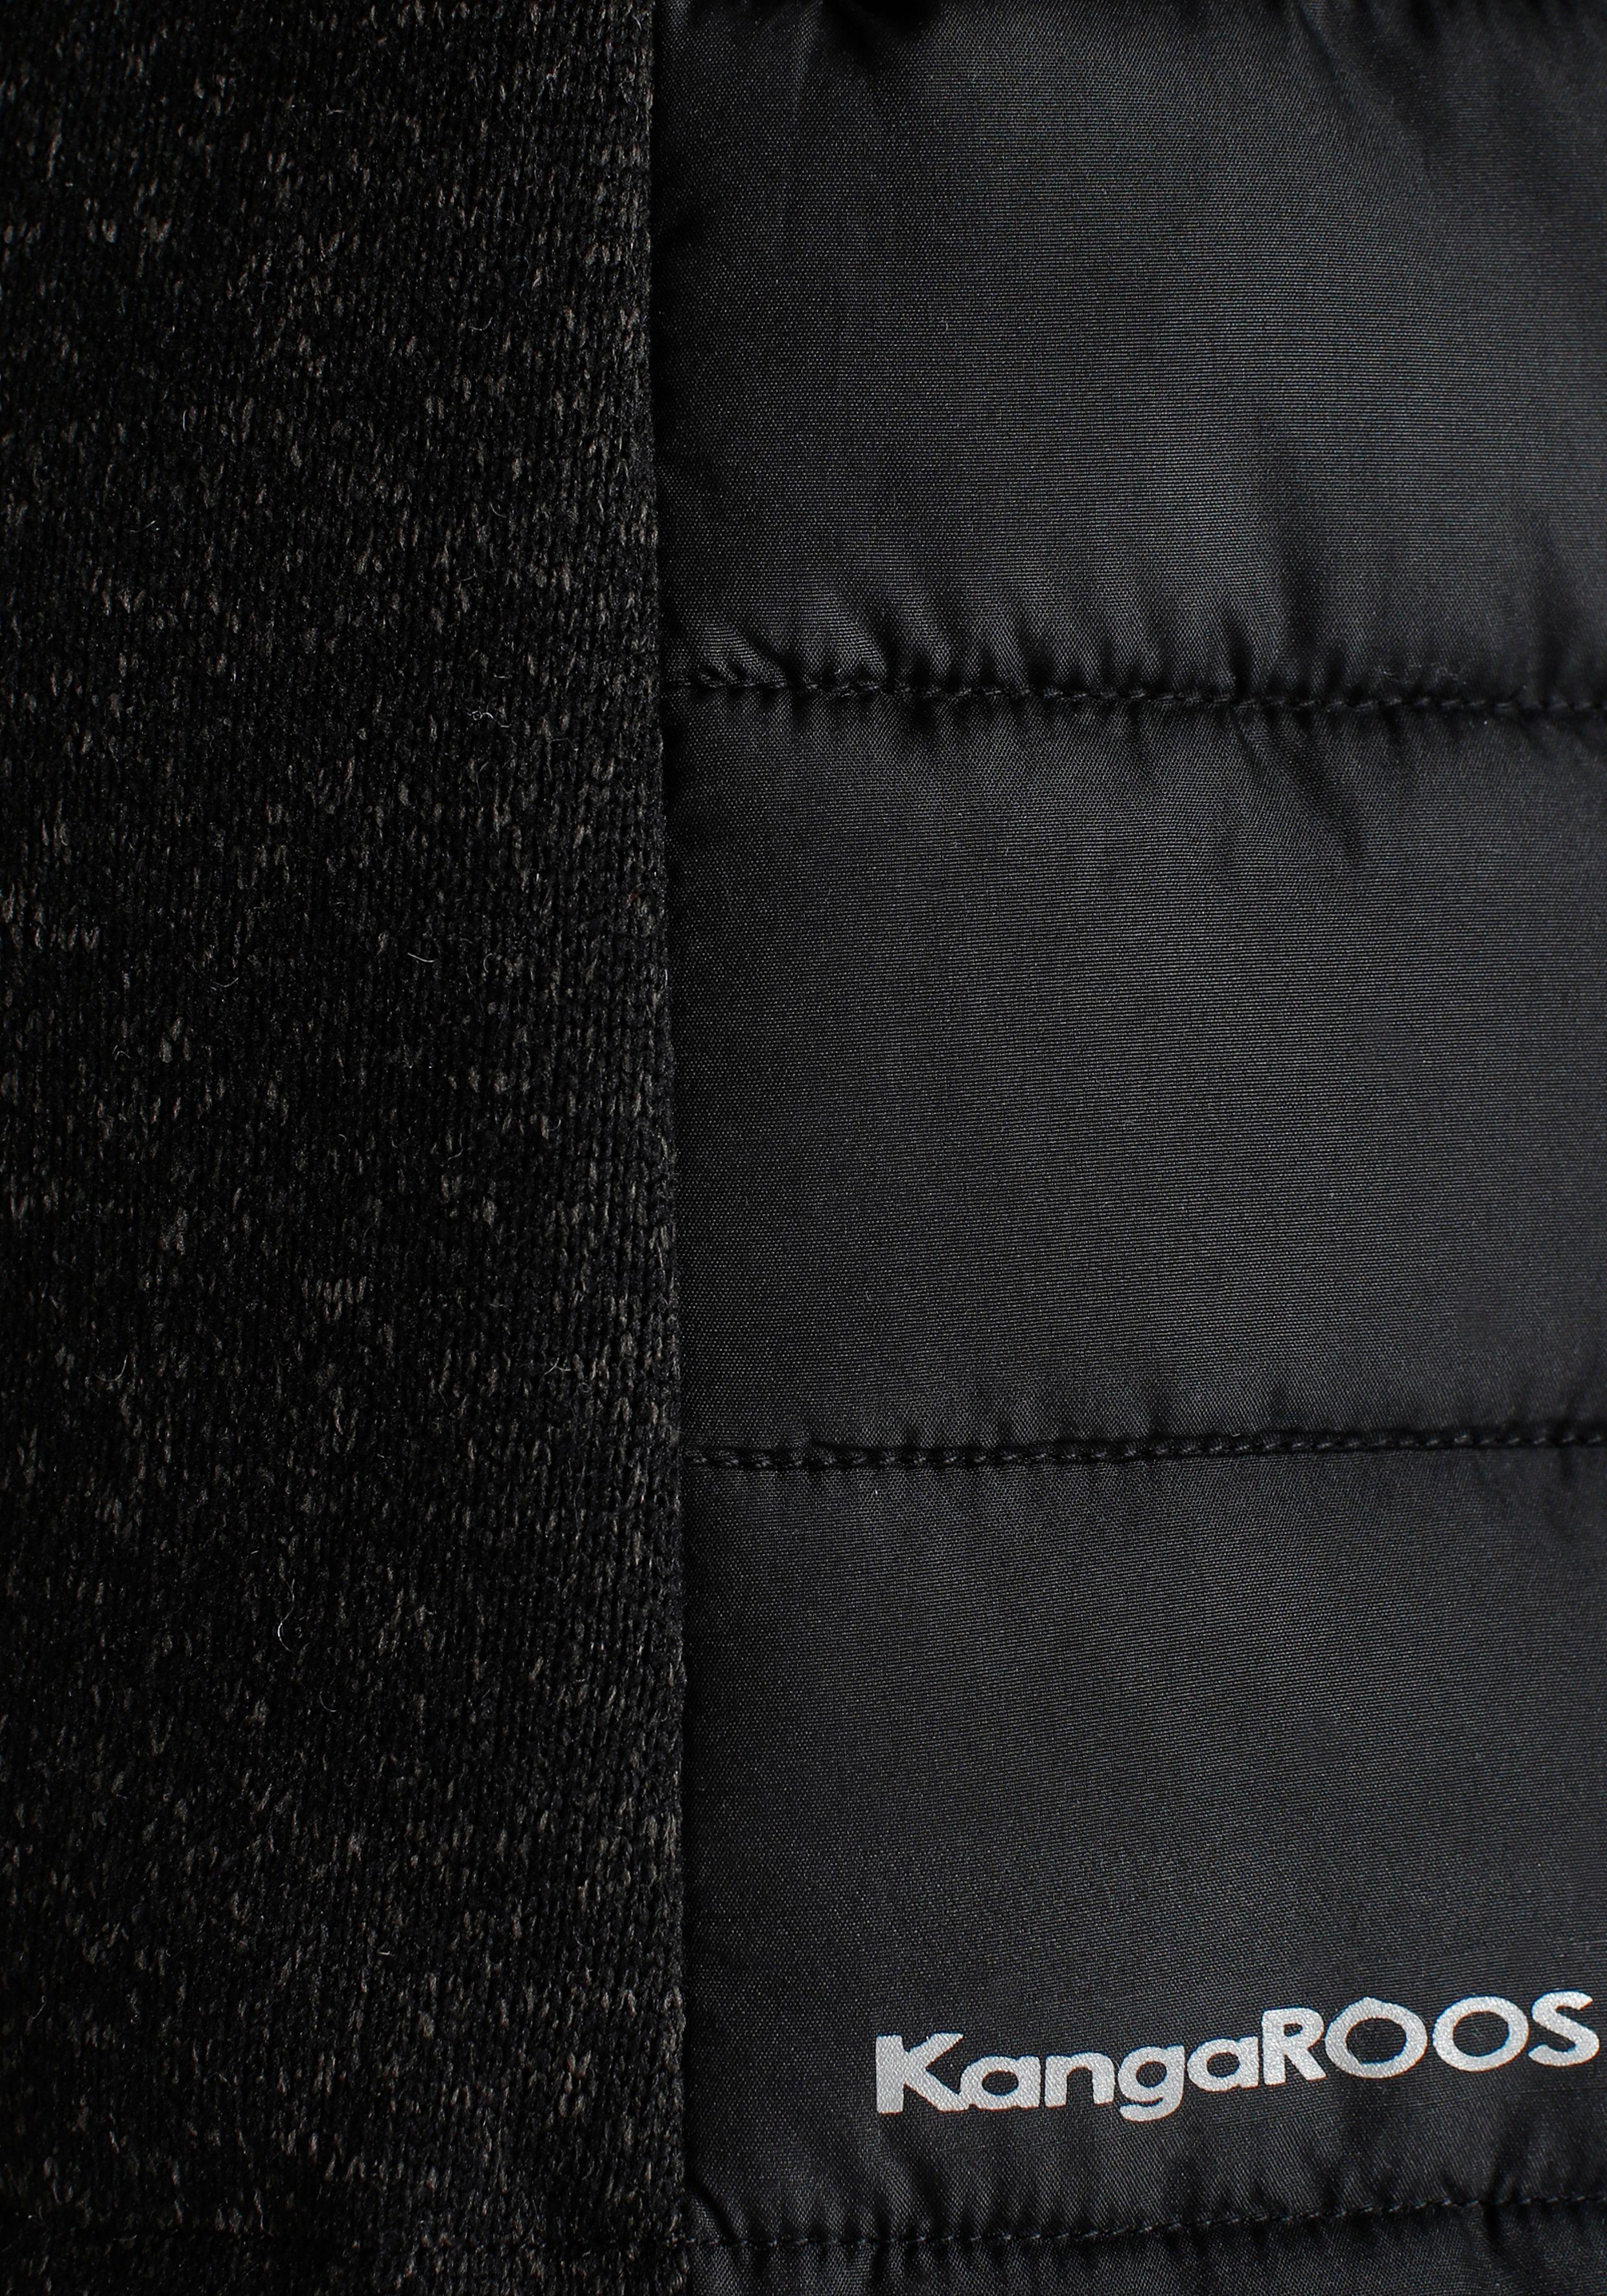 KOLLEKTION mit Kapuze NEUE Steppjacke KangaROOS trendigem schwarz abnehmbarer - Material-Mix im